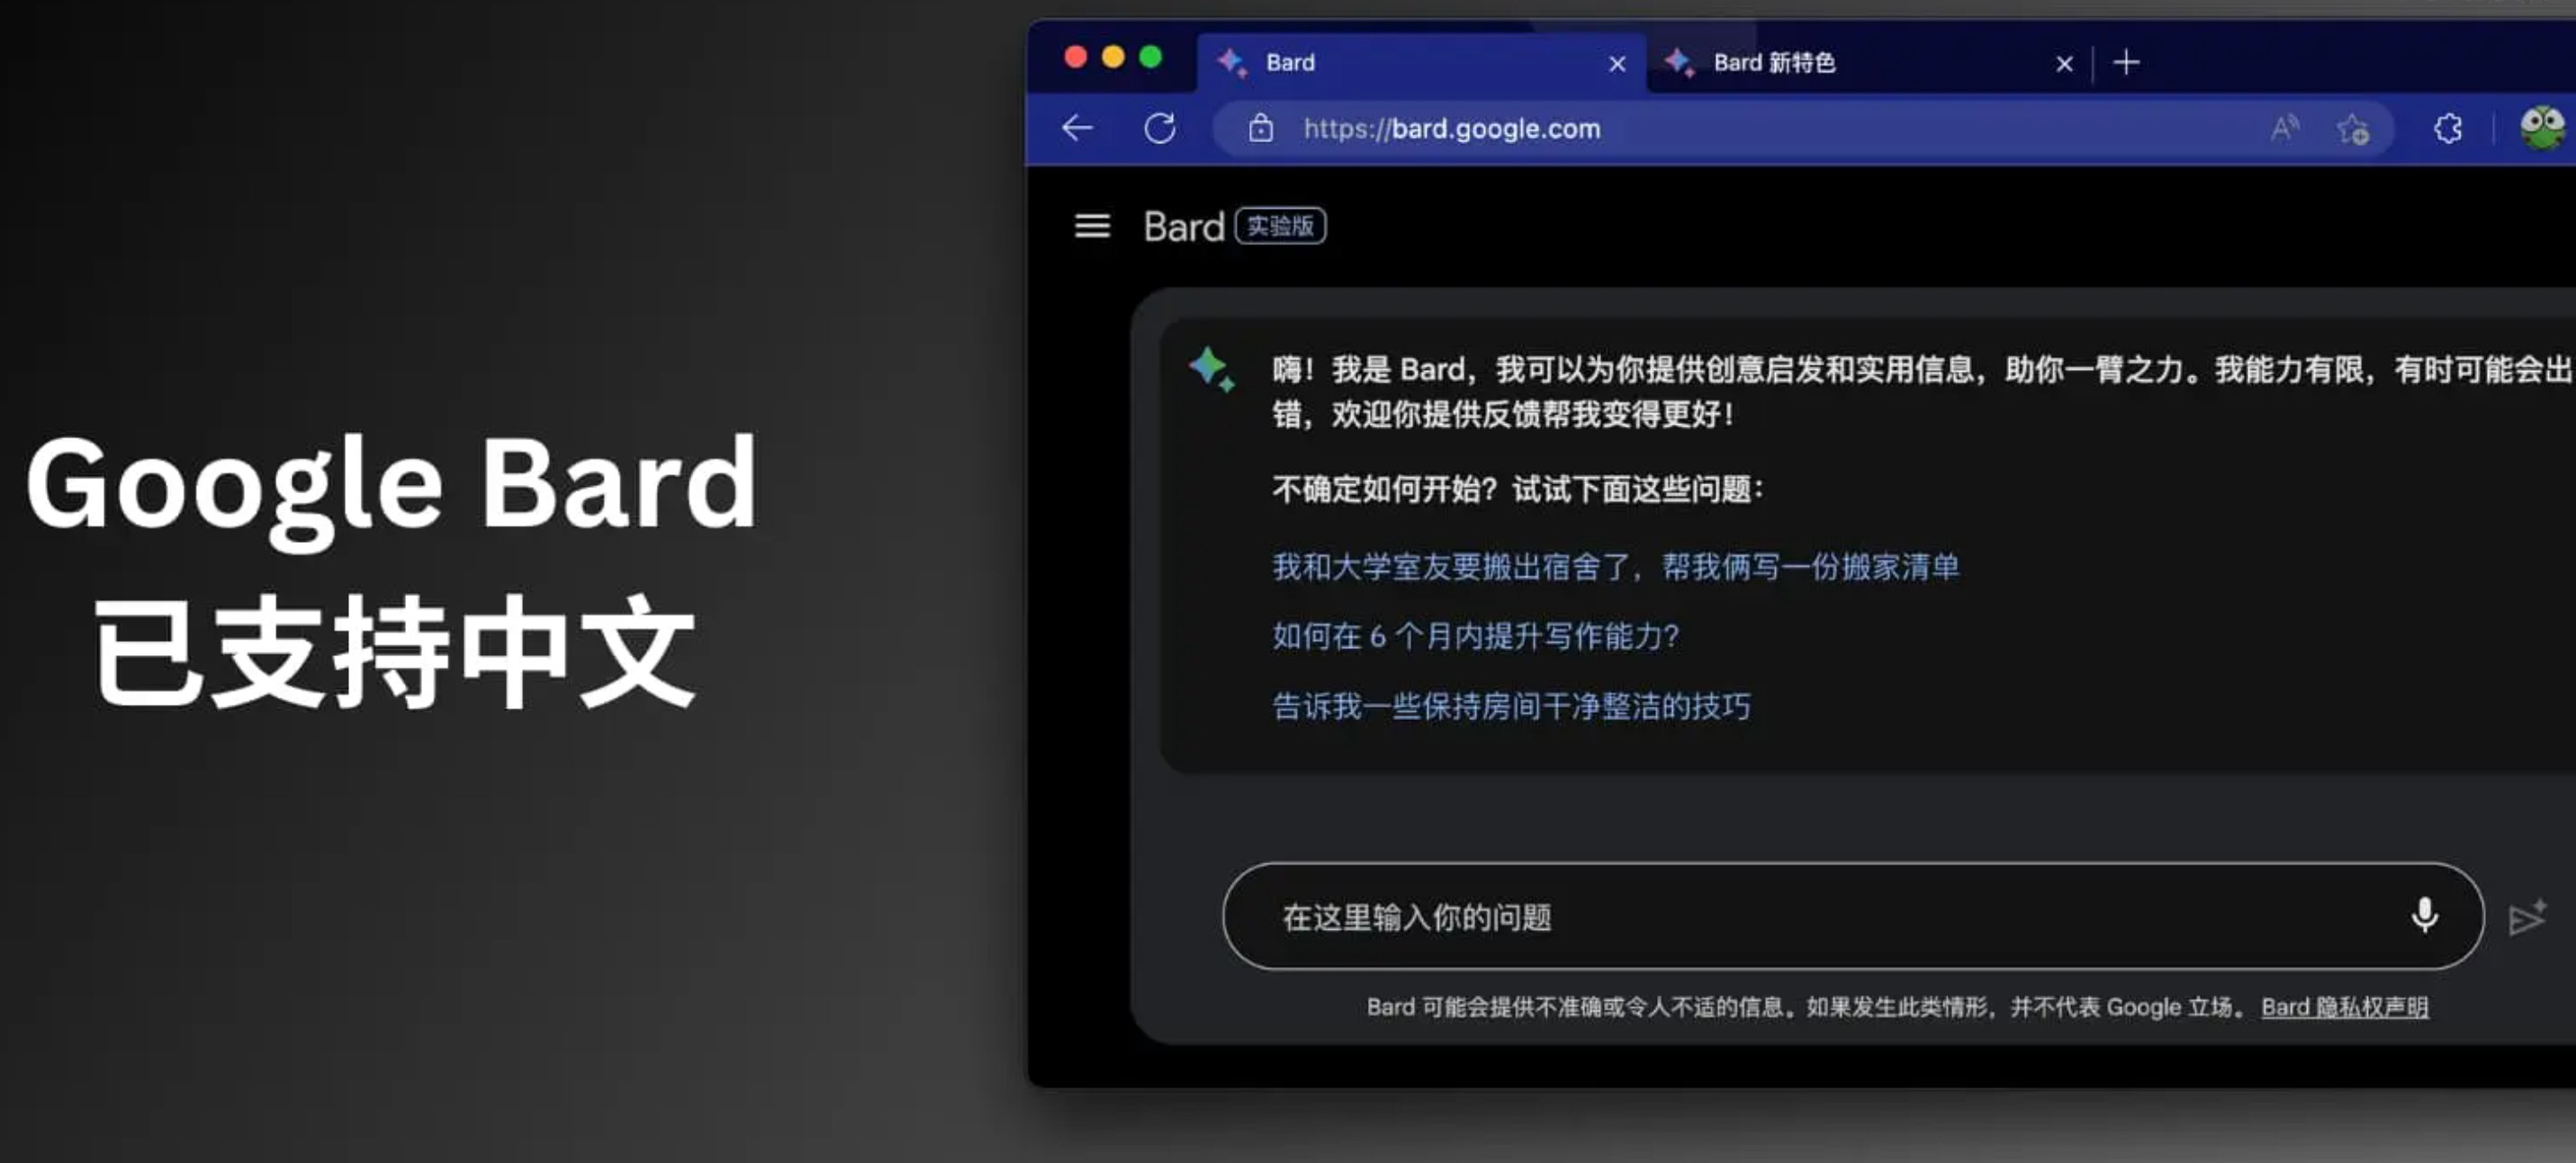 聊天大语言模型谷歌Bard现已支持中文